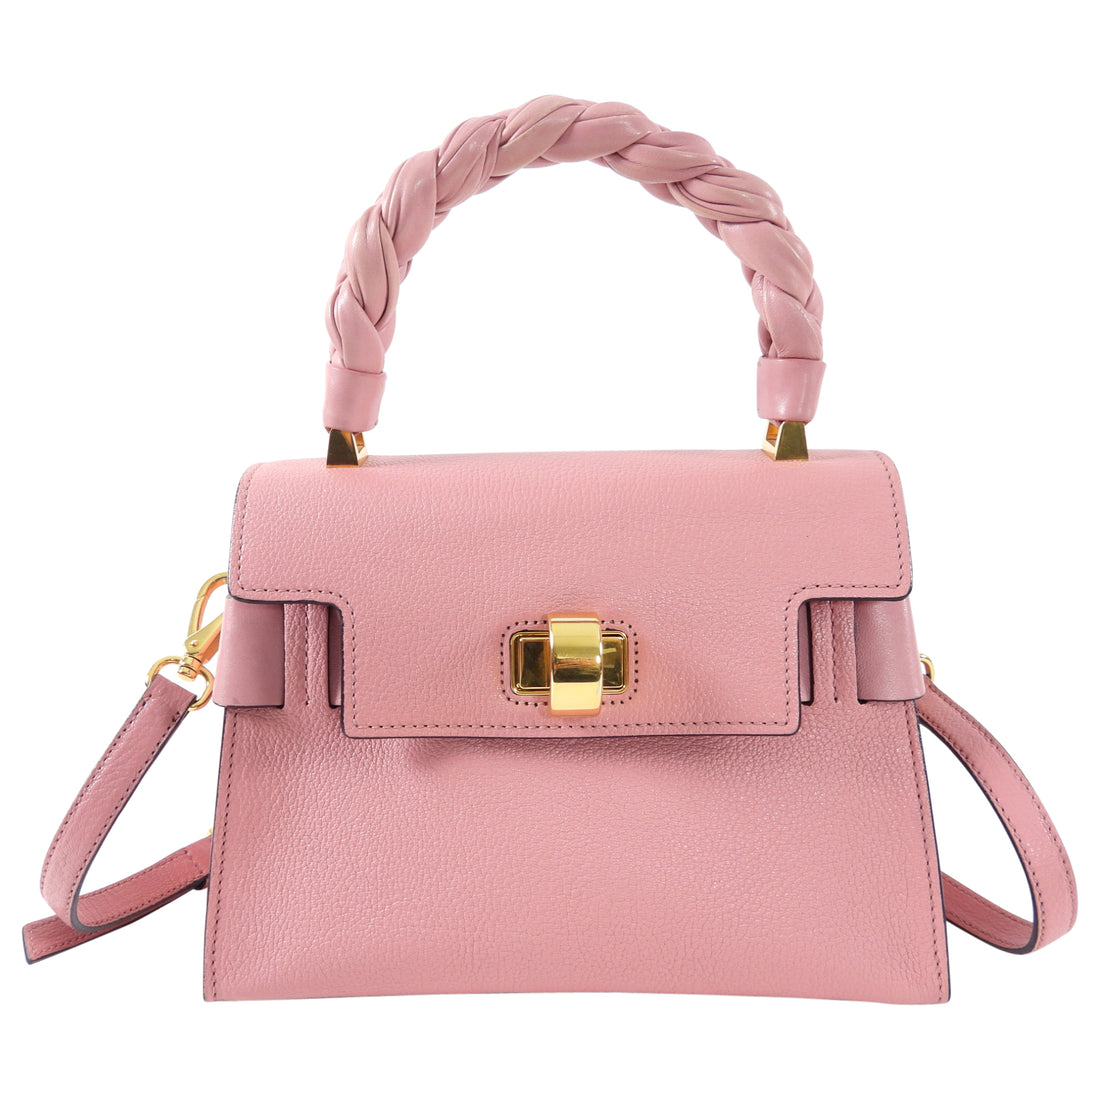 Miu Miu Pink Madras Click Top Handle Satchel Bag – I MISS YOU VINTAGE